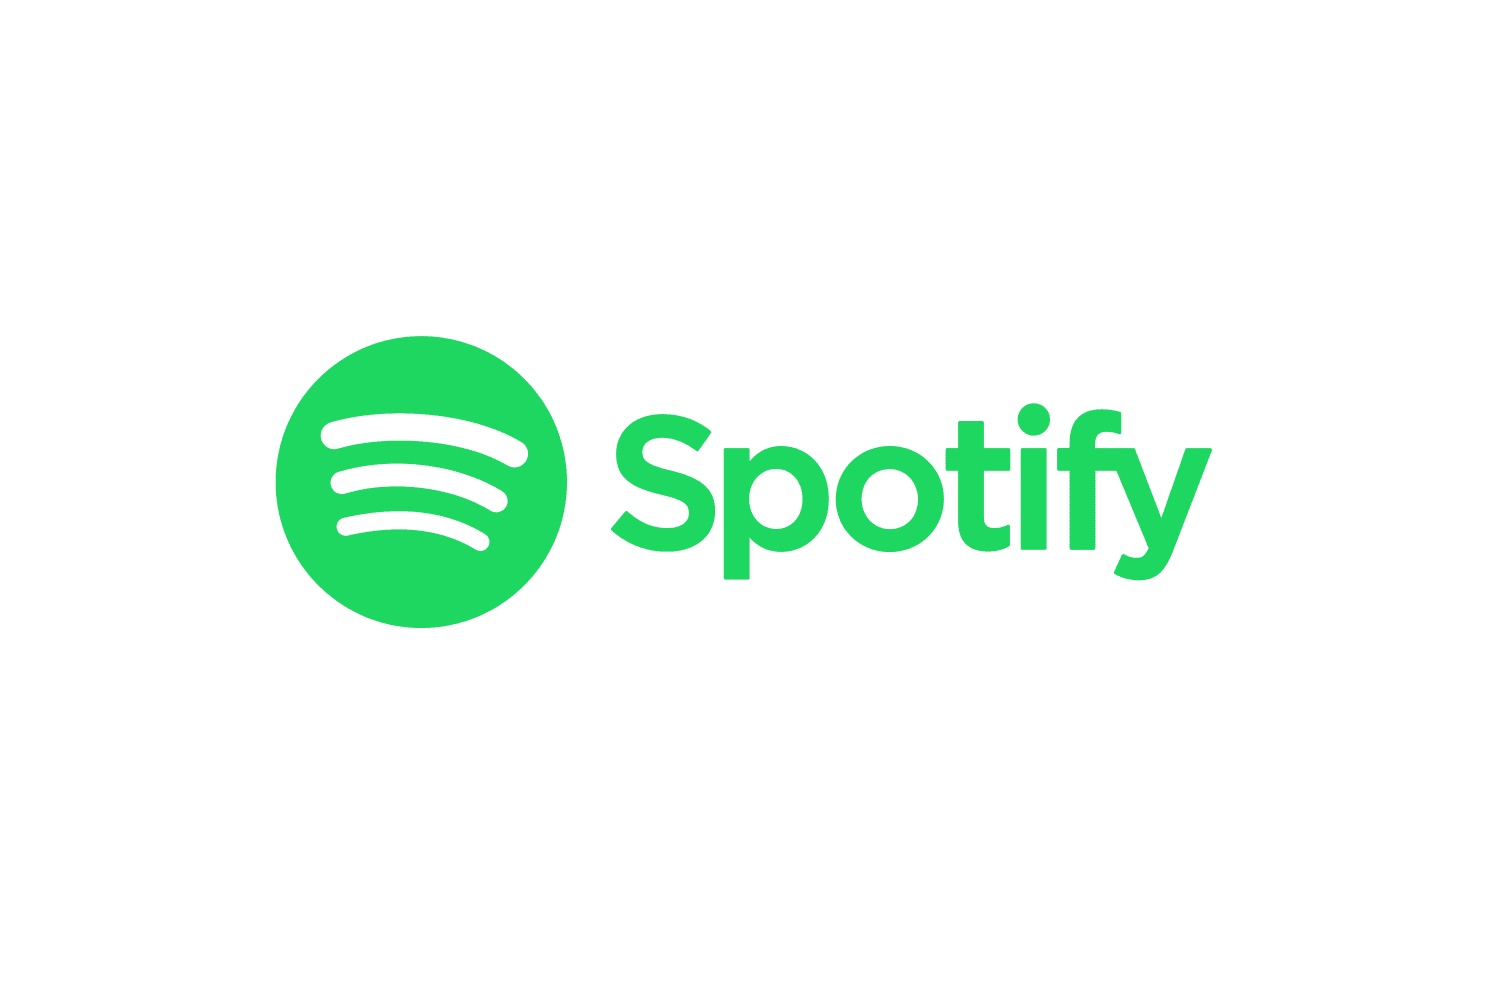 Spotify Branding